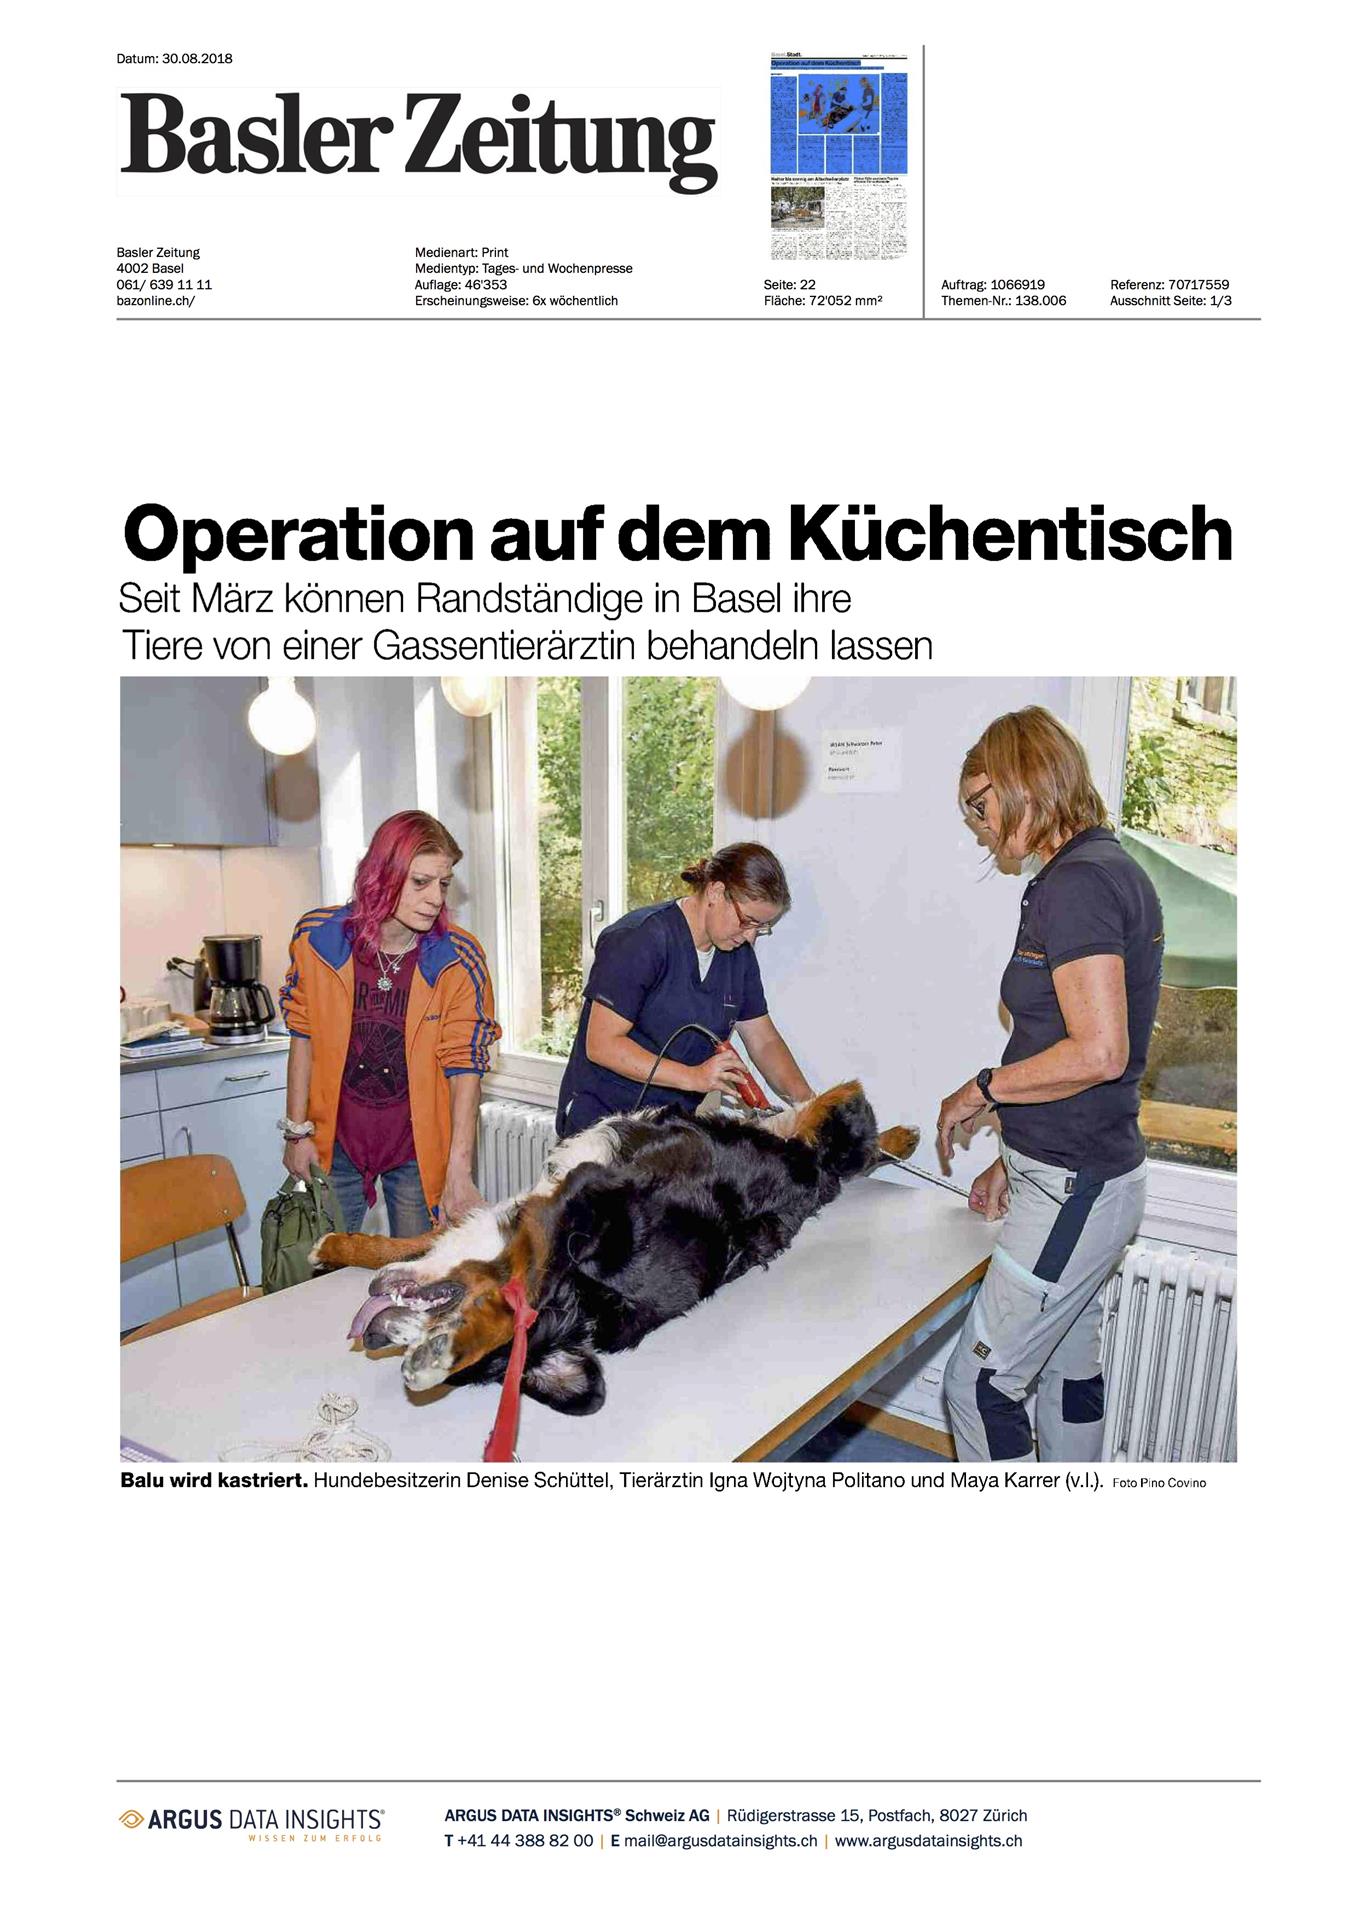 Basler Zeitung - August 2018